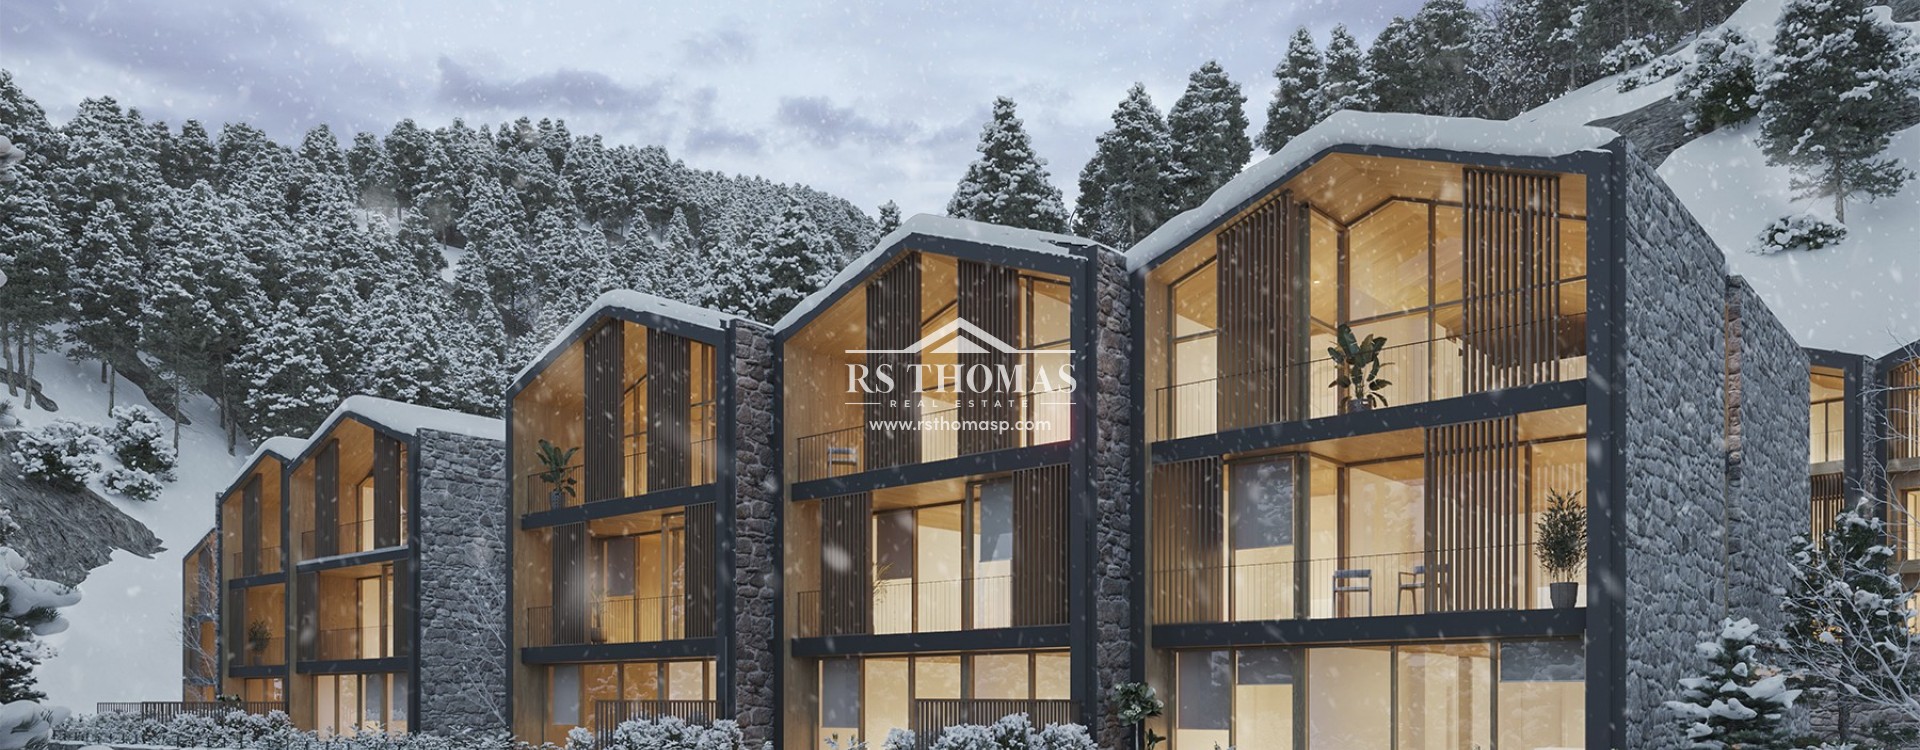 1550 Village Resort | RS Thomas Real Estate | RS432